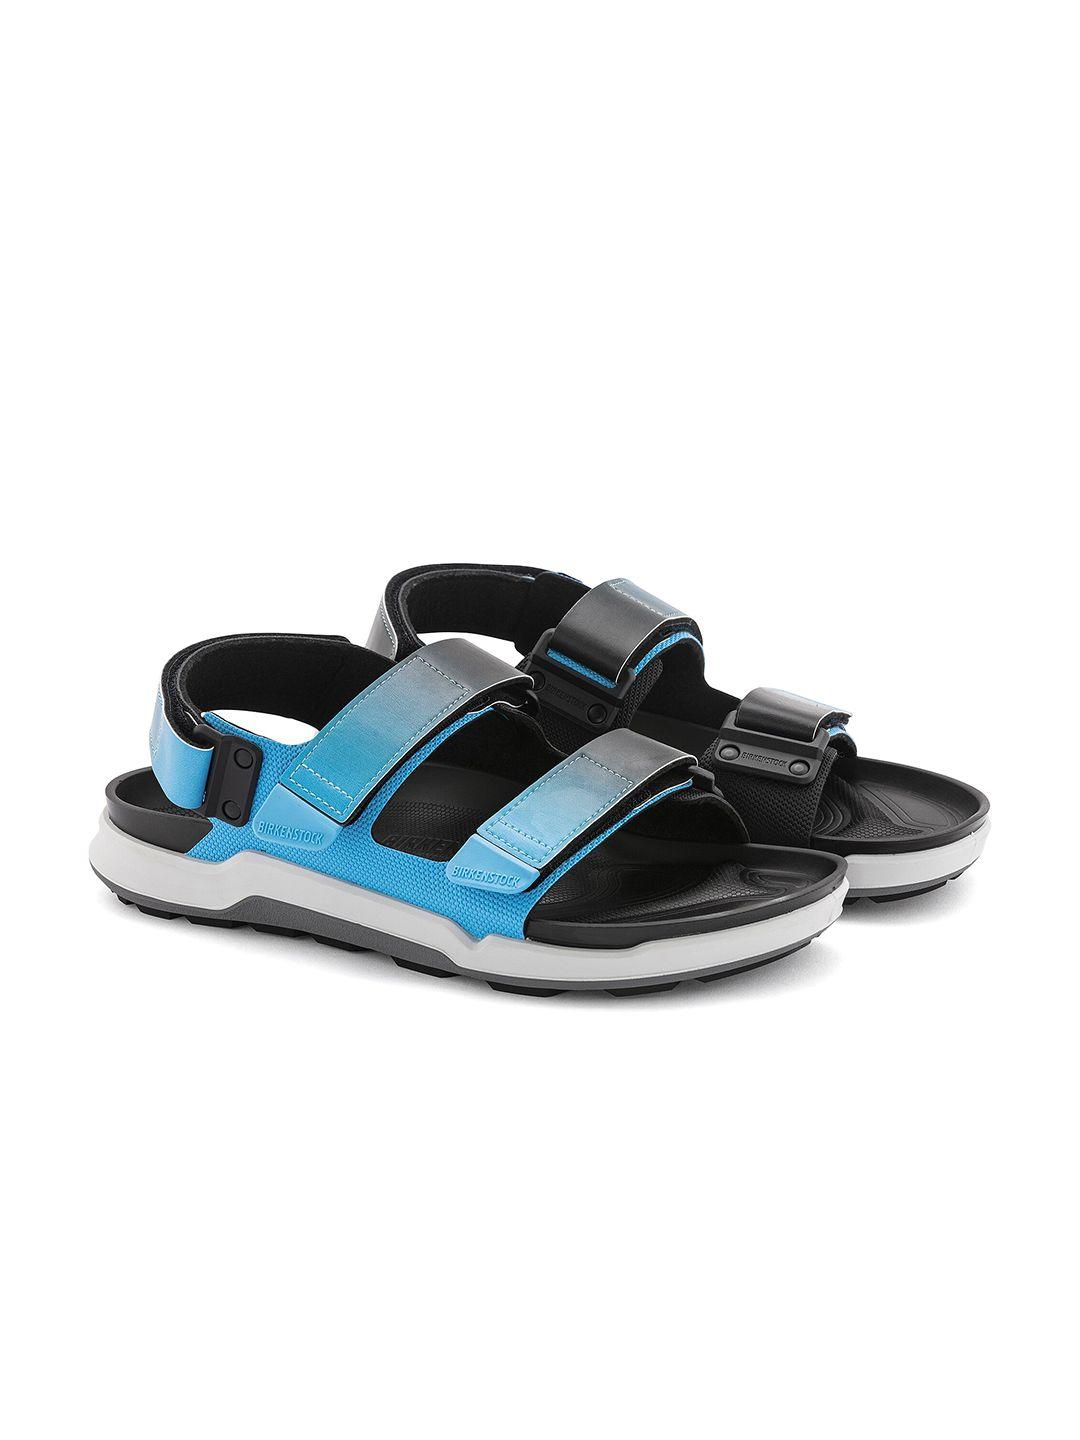 birkenstock men tatacoa regular width comfort sandals